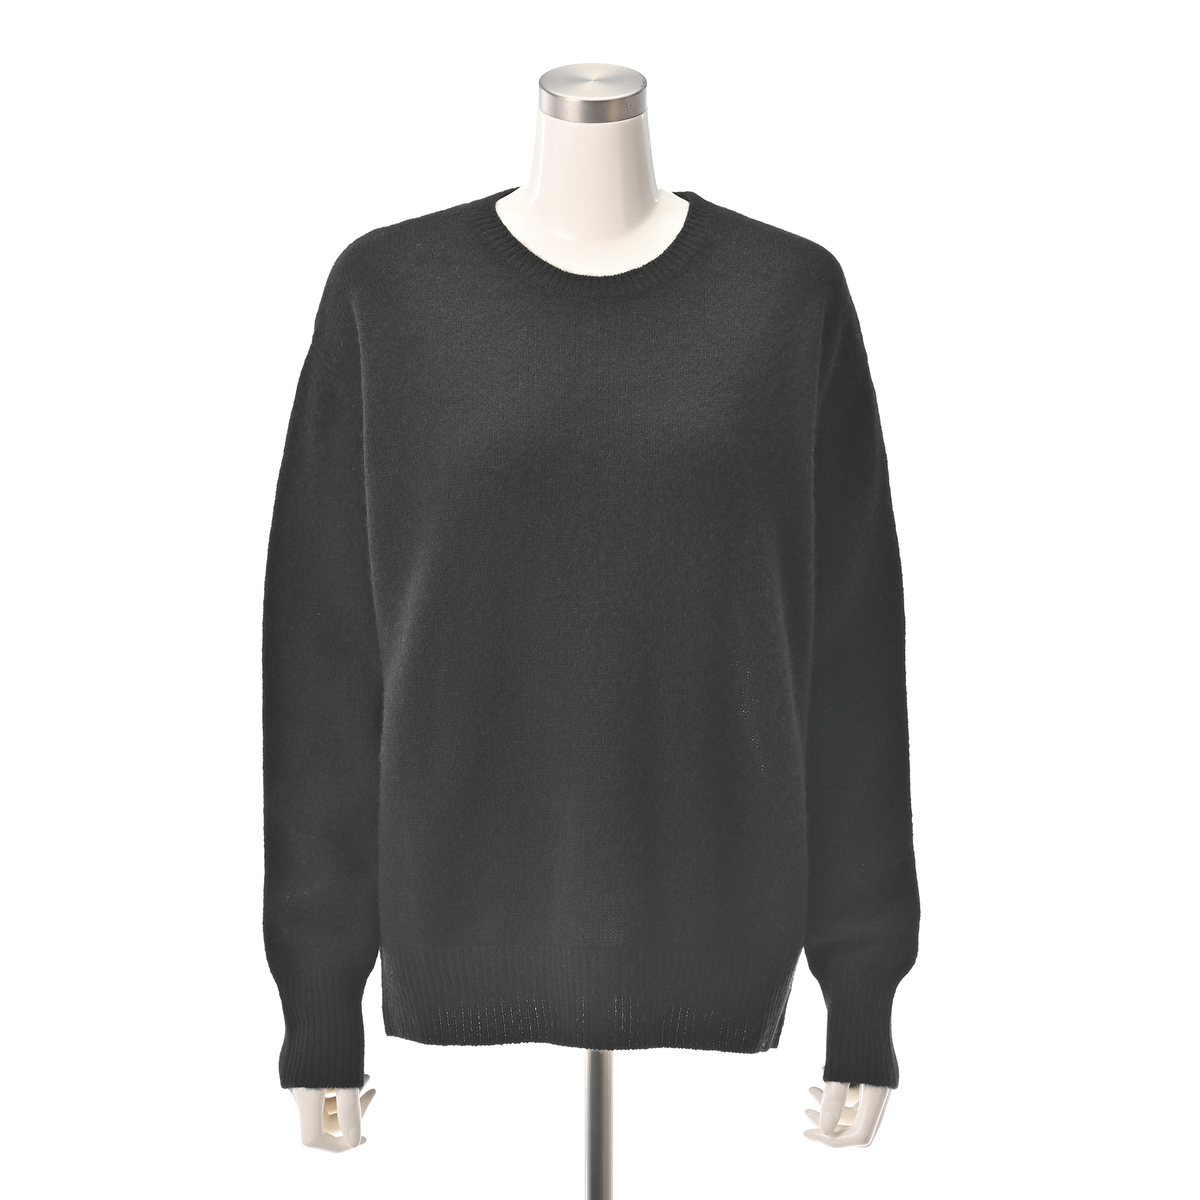  Anne Coquine Luxe ヤクミックスクルーネックベーシックセーター  S  ブラック